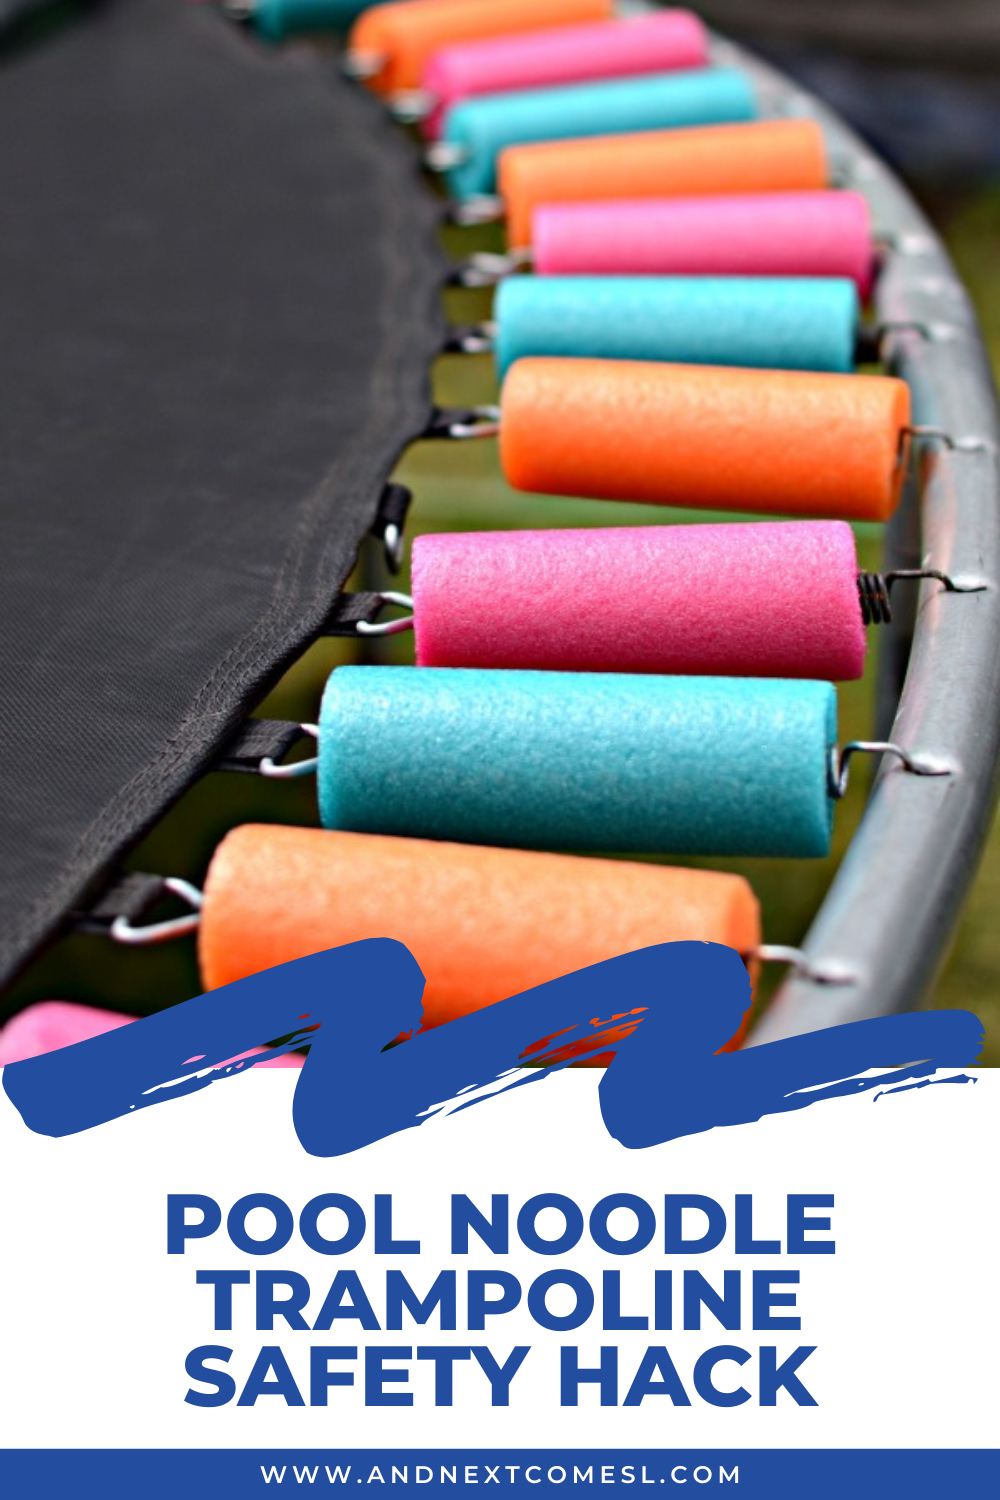 DIY Trampoline Spring cover pool noodle repair. www.DIYeasycrafts.com